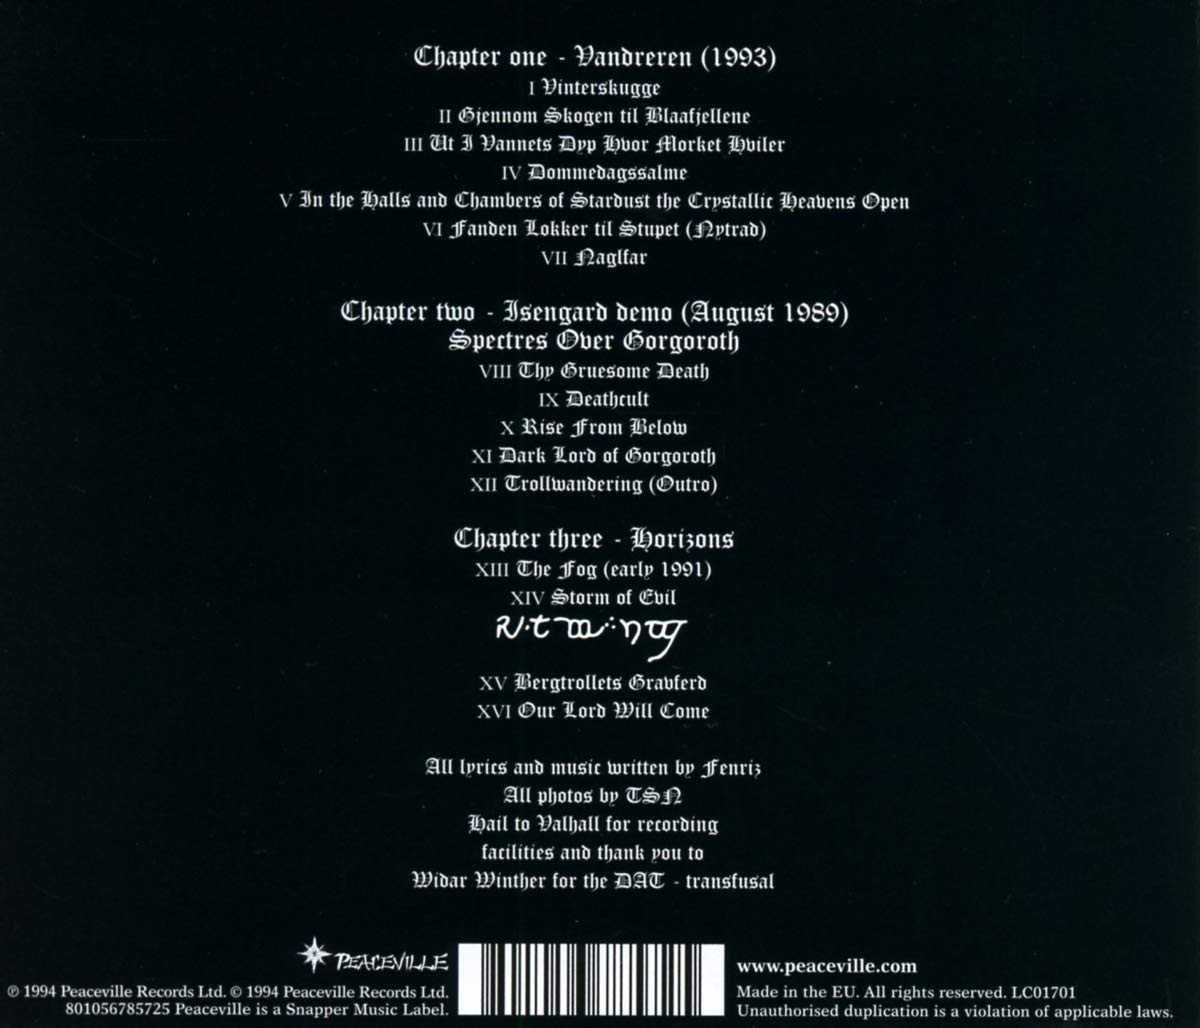 ISENGARD – VINTERSKUGGE CD